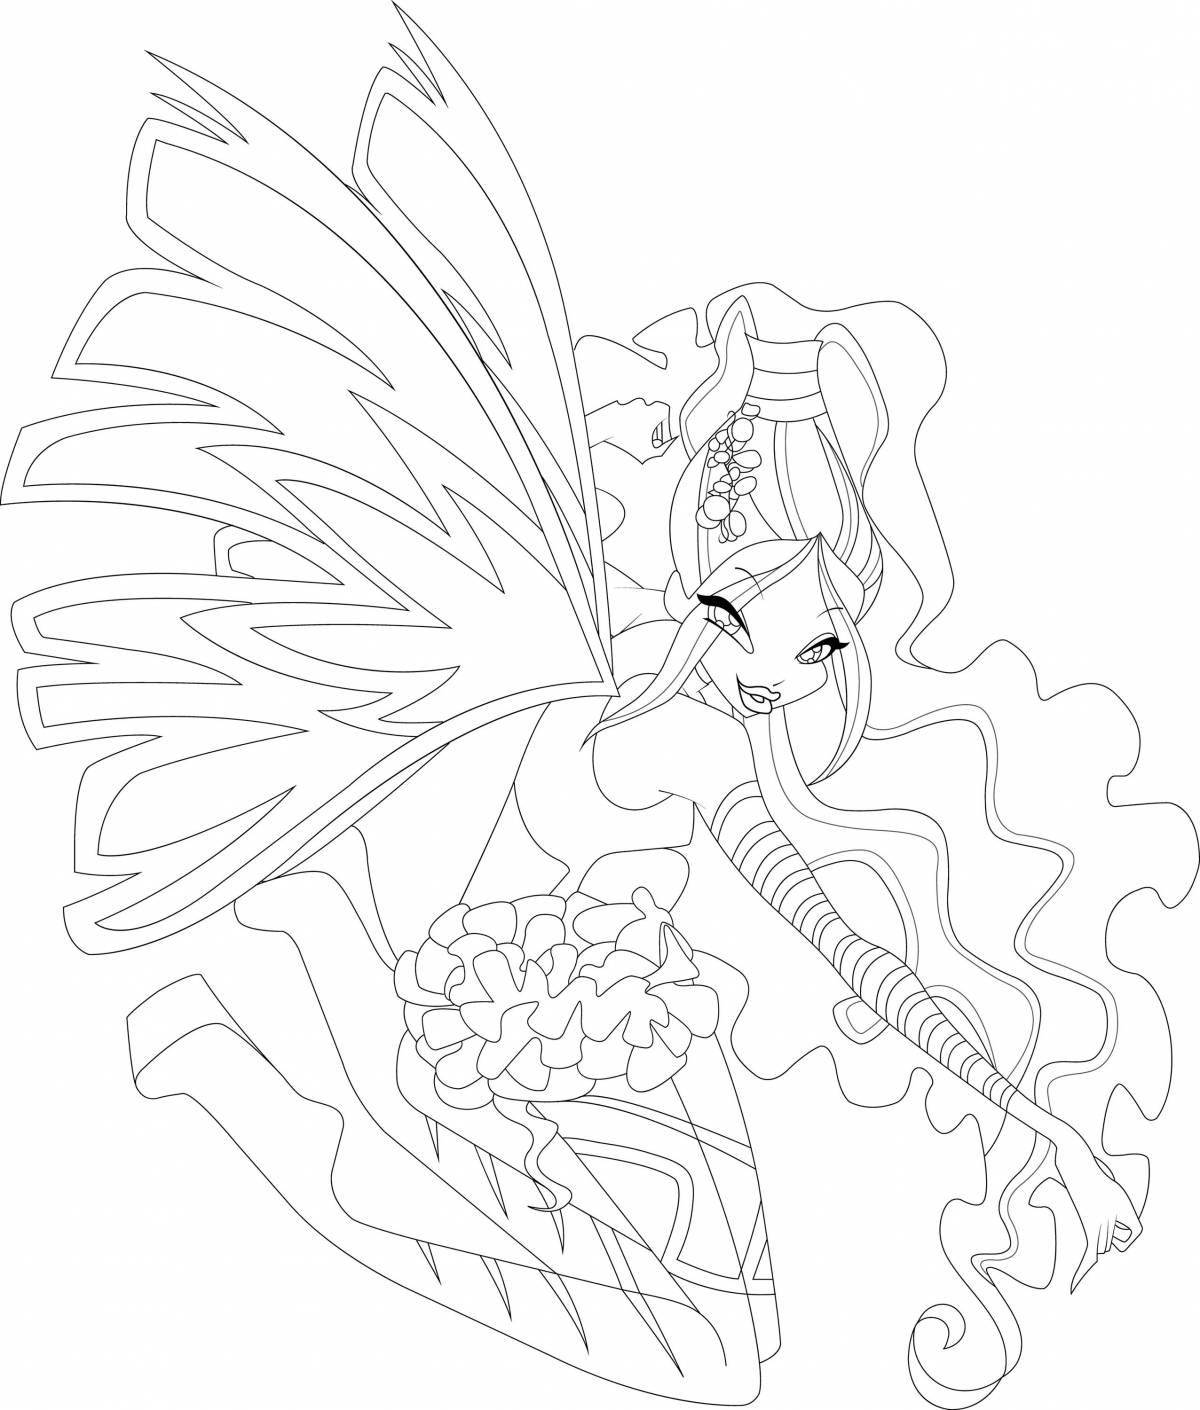 Impeccable winx coloring sirenix bloom